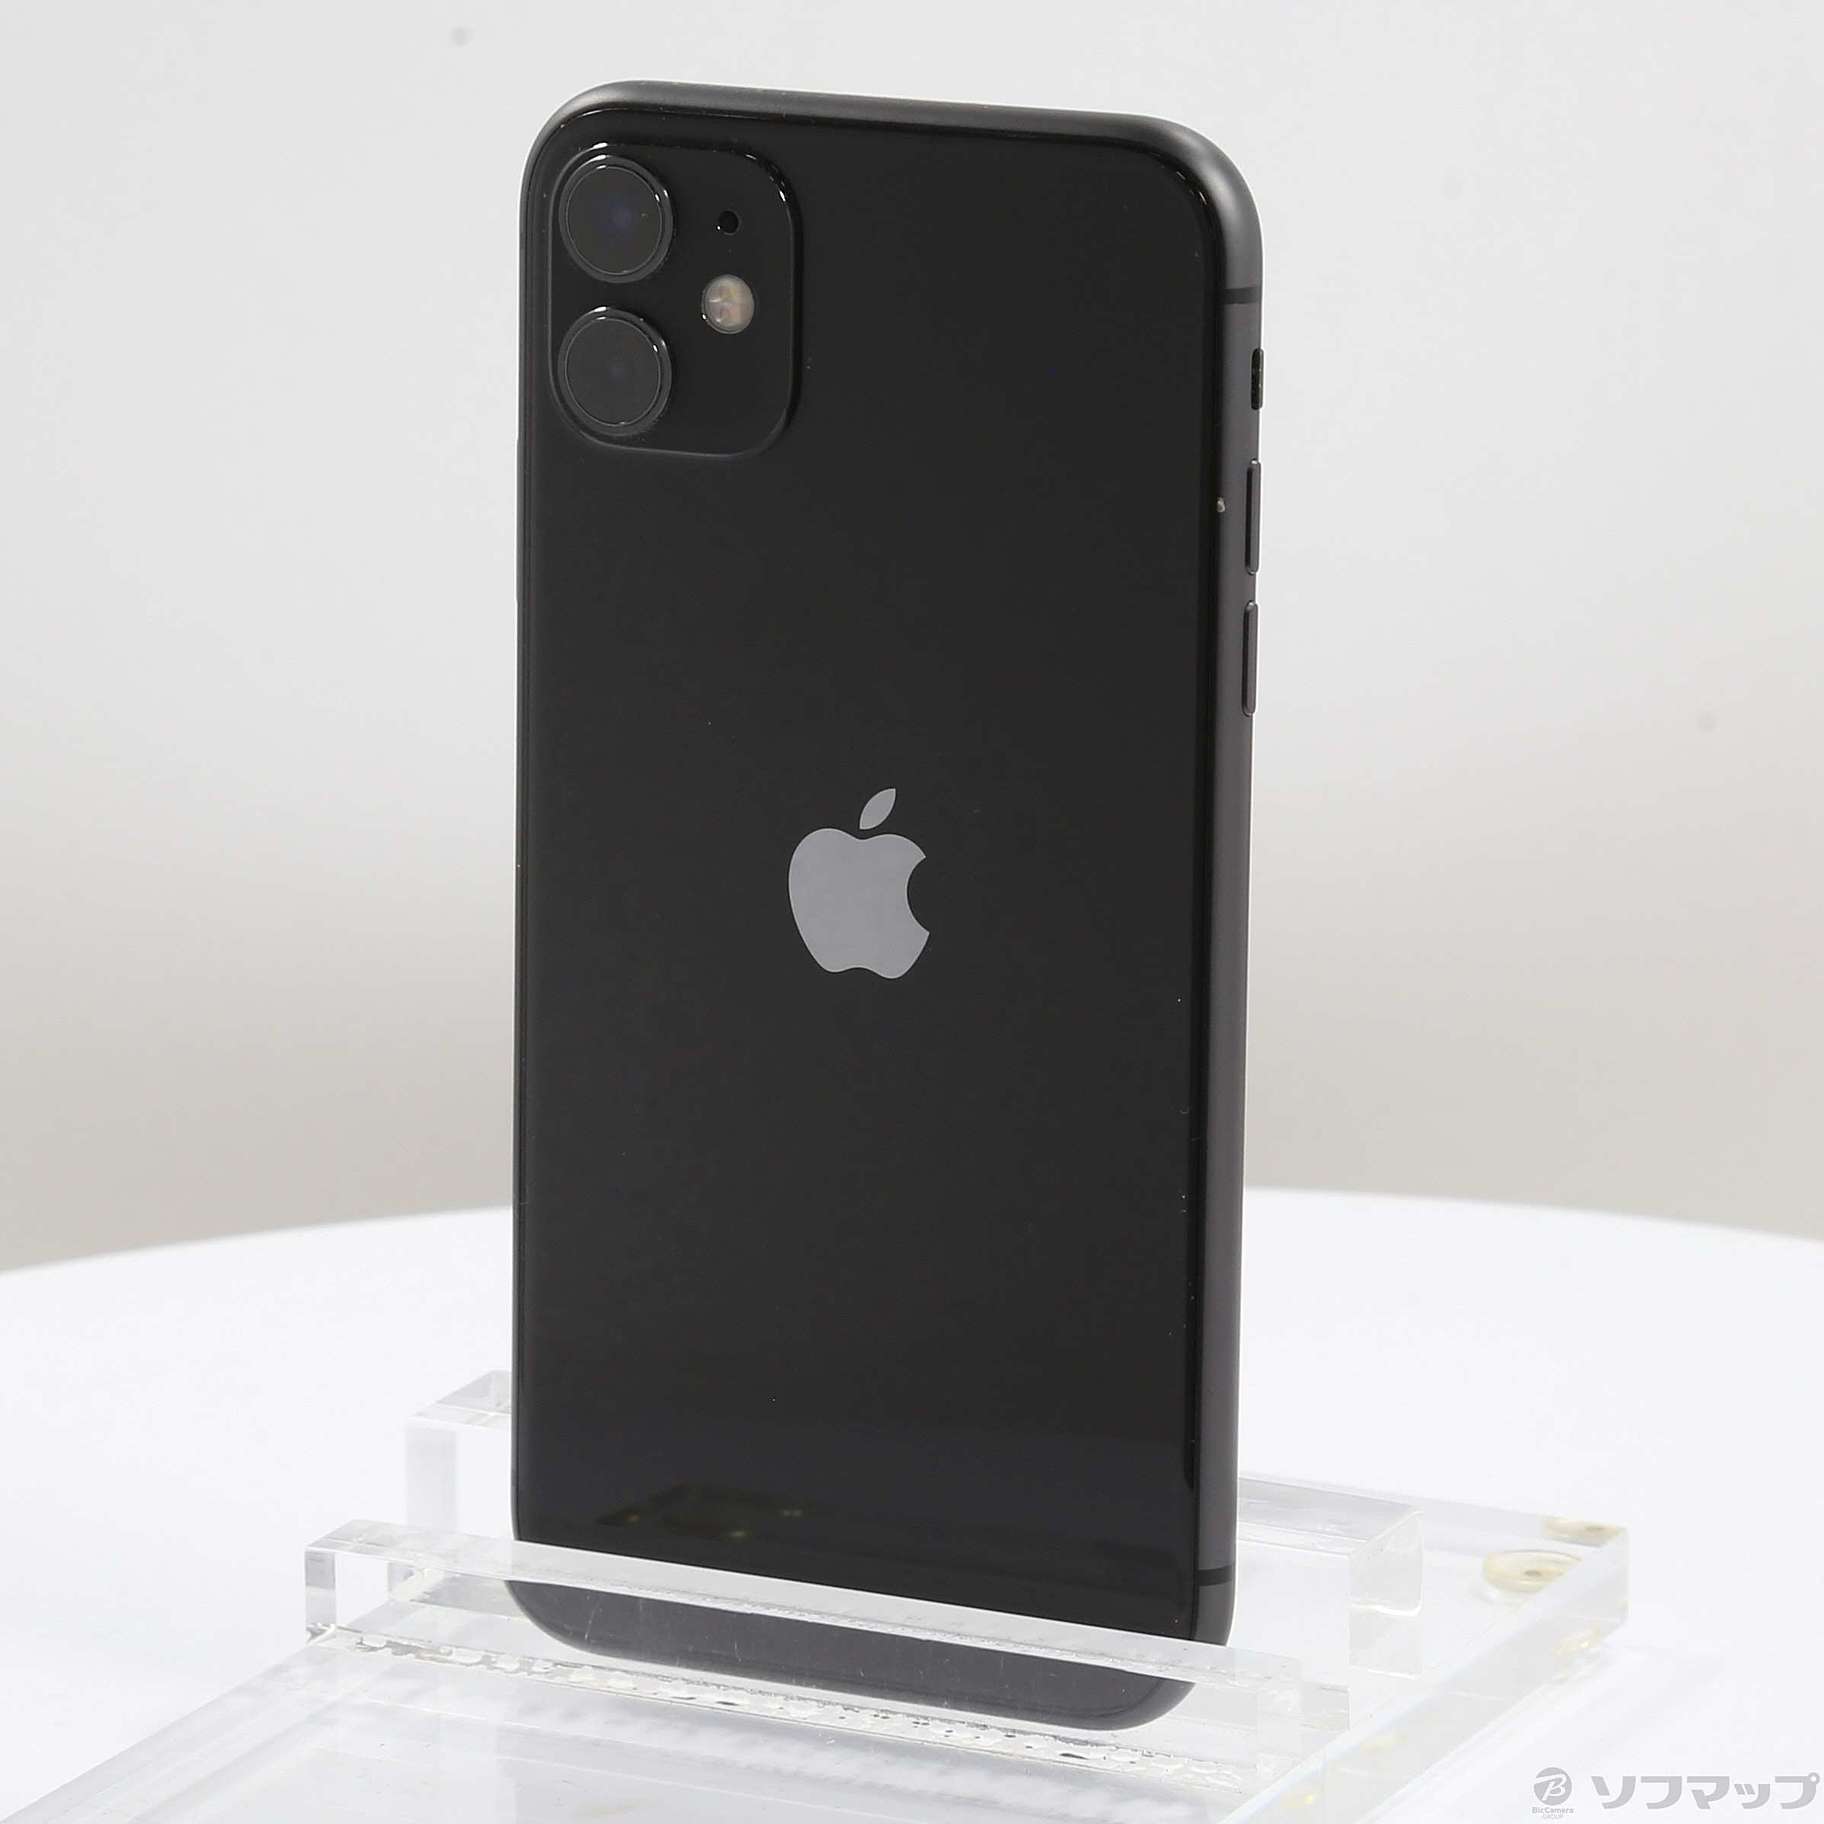 9,450円iPhone11 ブラック 64GB